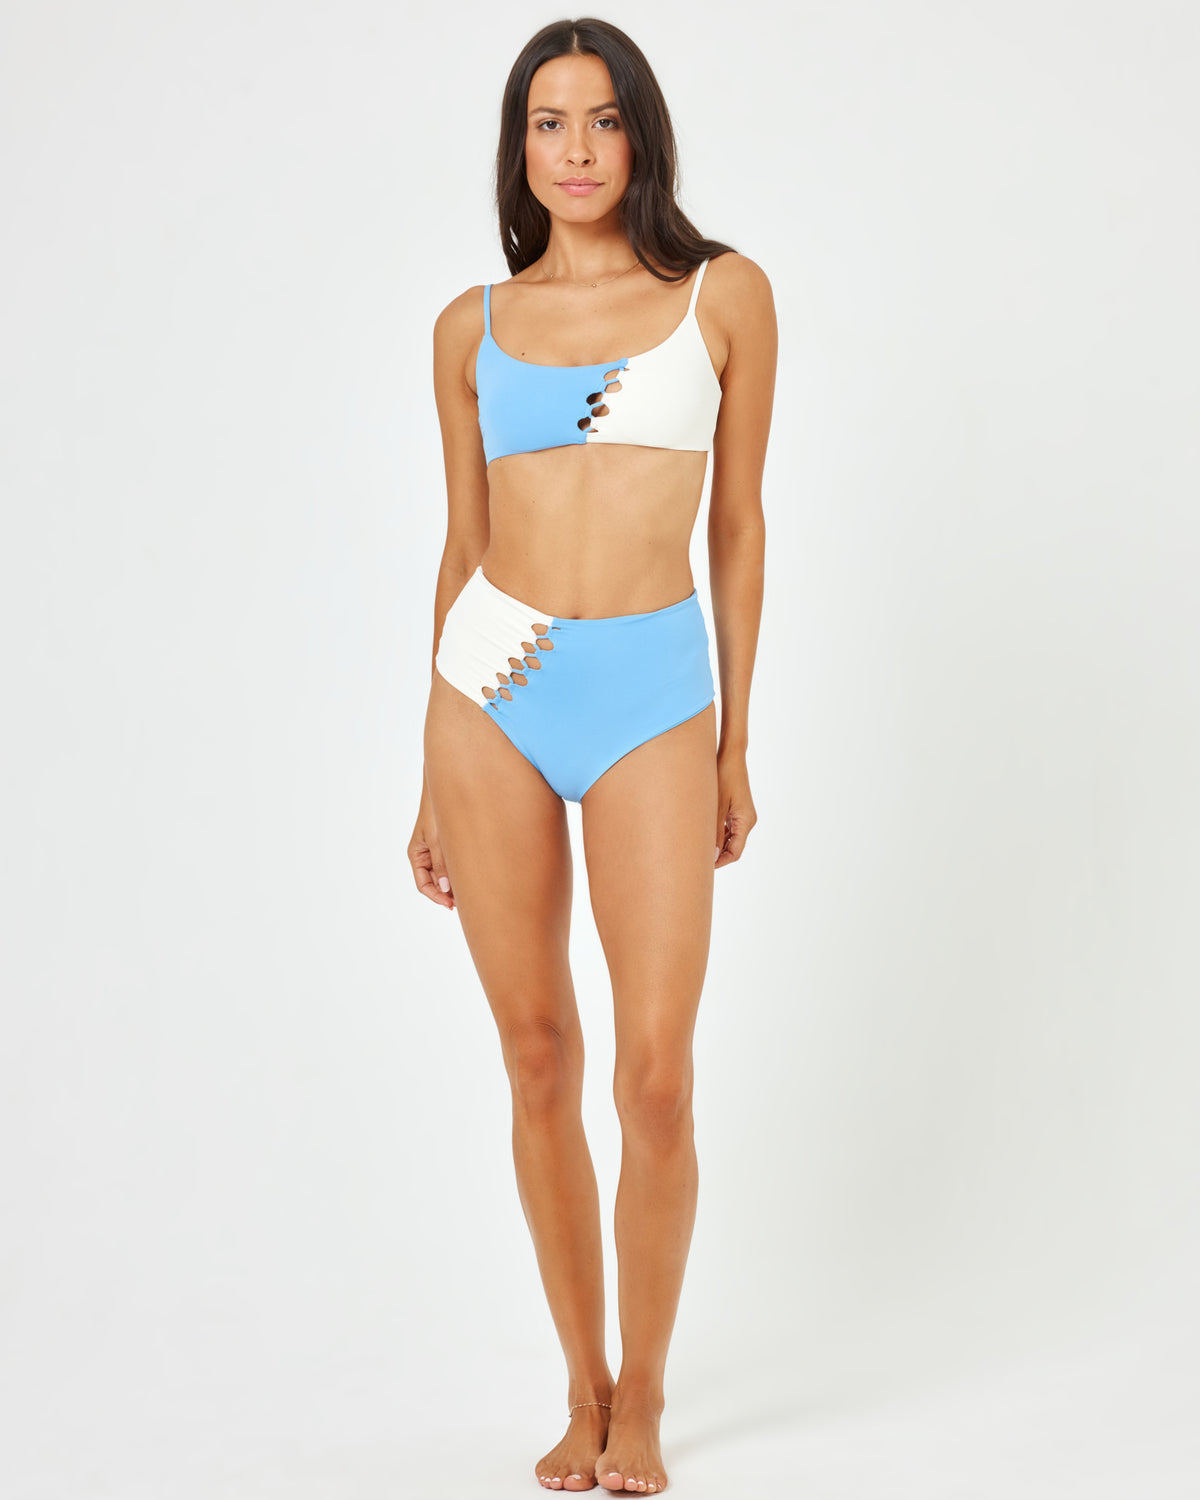 Solstice Bikini Top - Aura-Cream Aura-Cream | Model: Emily (size: S)